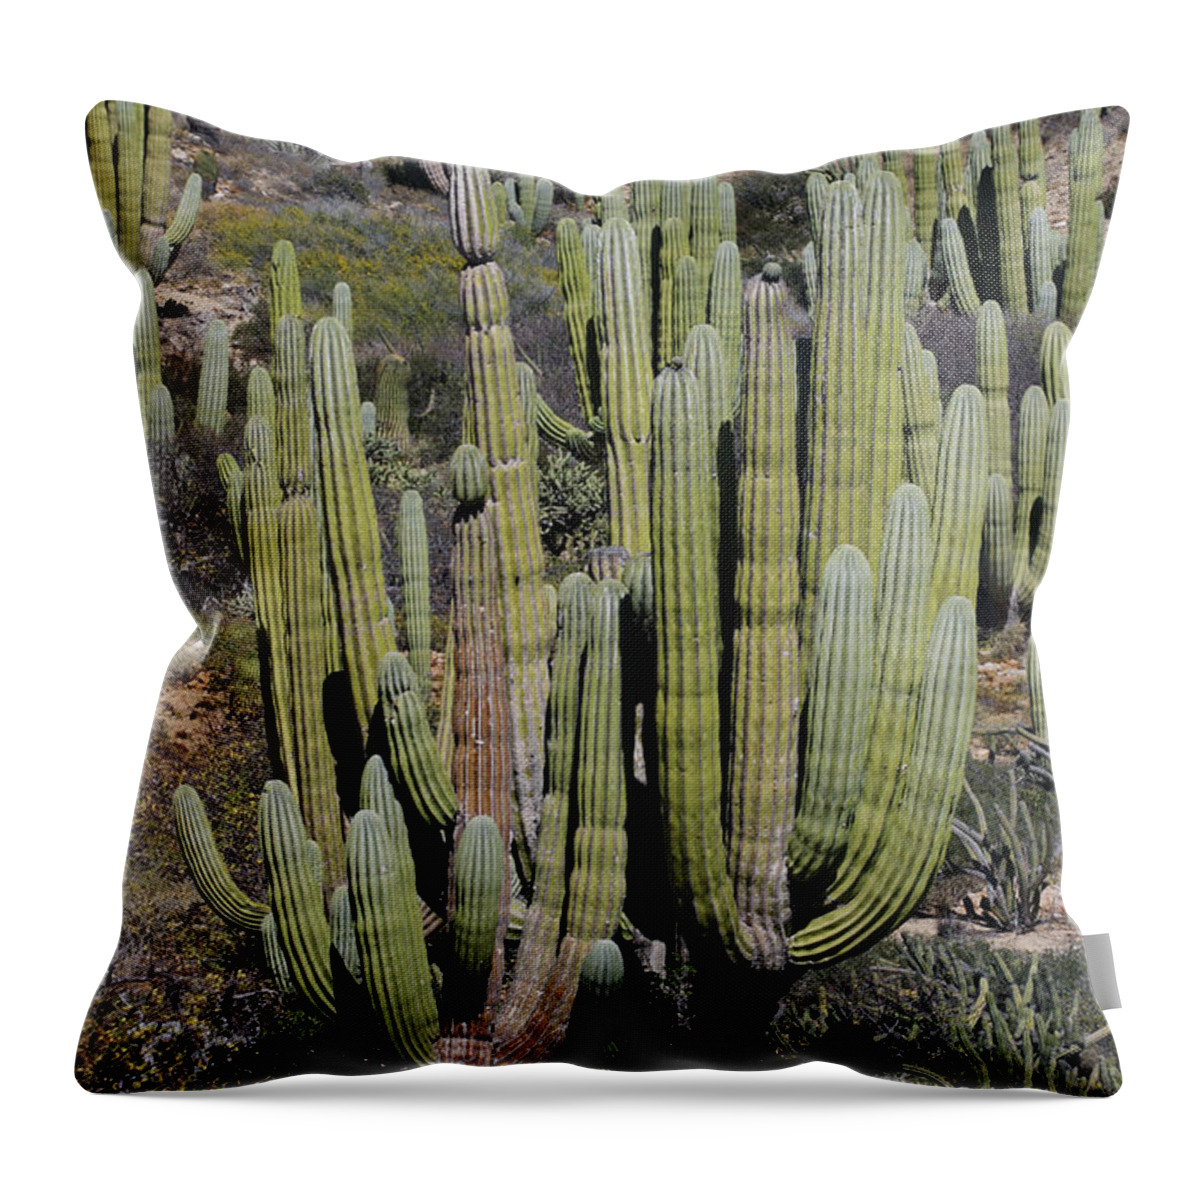 Mp Throw Pillow featuring the photograph Cardon Pachycereus Pringlei Cacti #1 by Hiroya Minakuchi